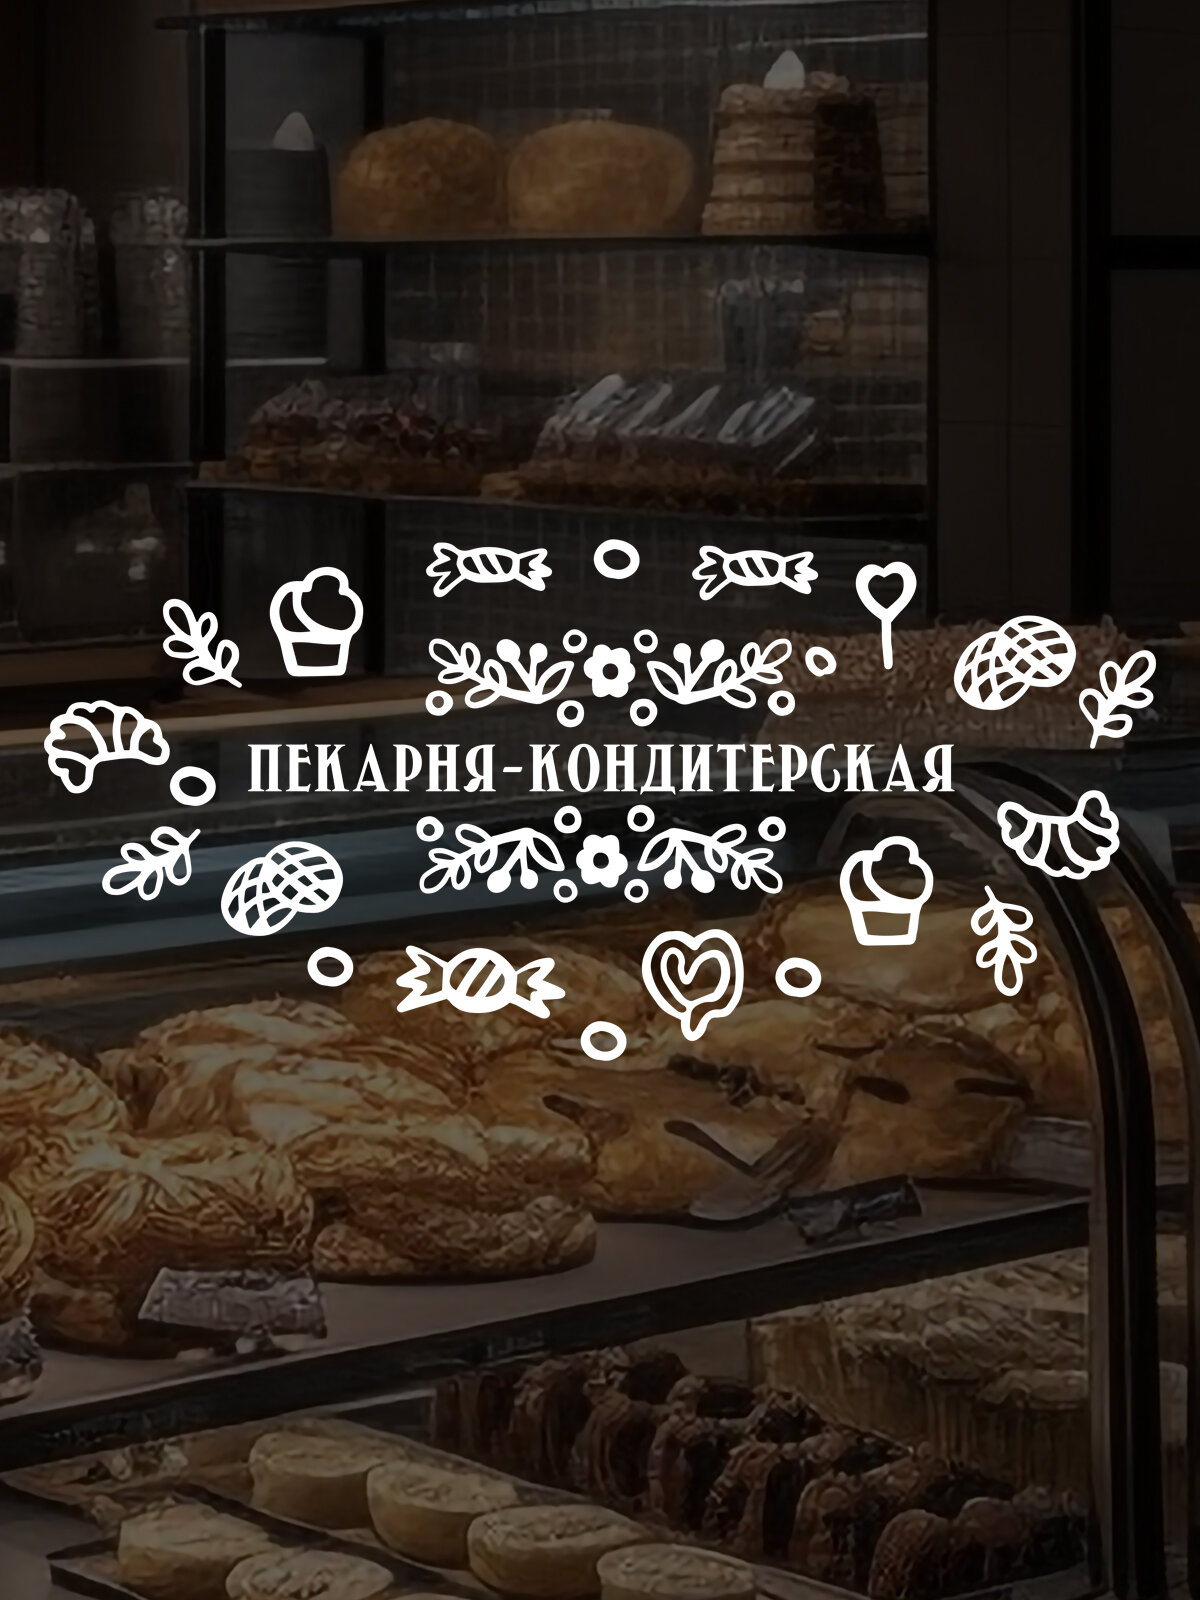 Наклейка 'Пекарня кондитер' (Наклейка для пекарни-кондитерской с надписью для витрины, окна магазина)